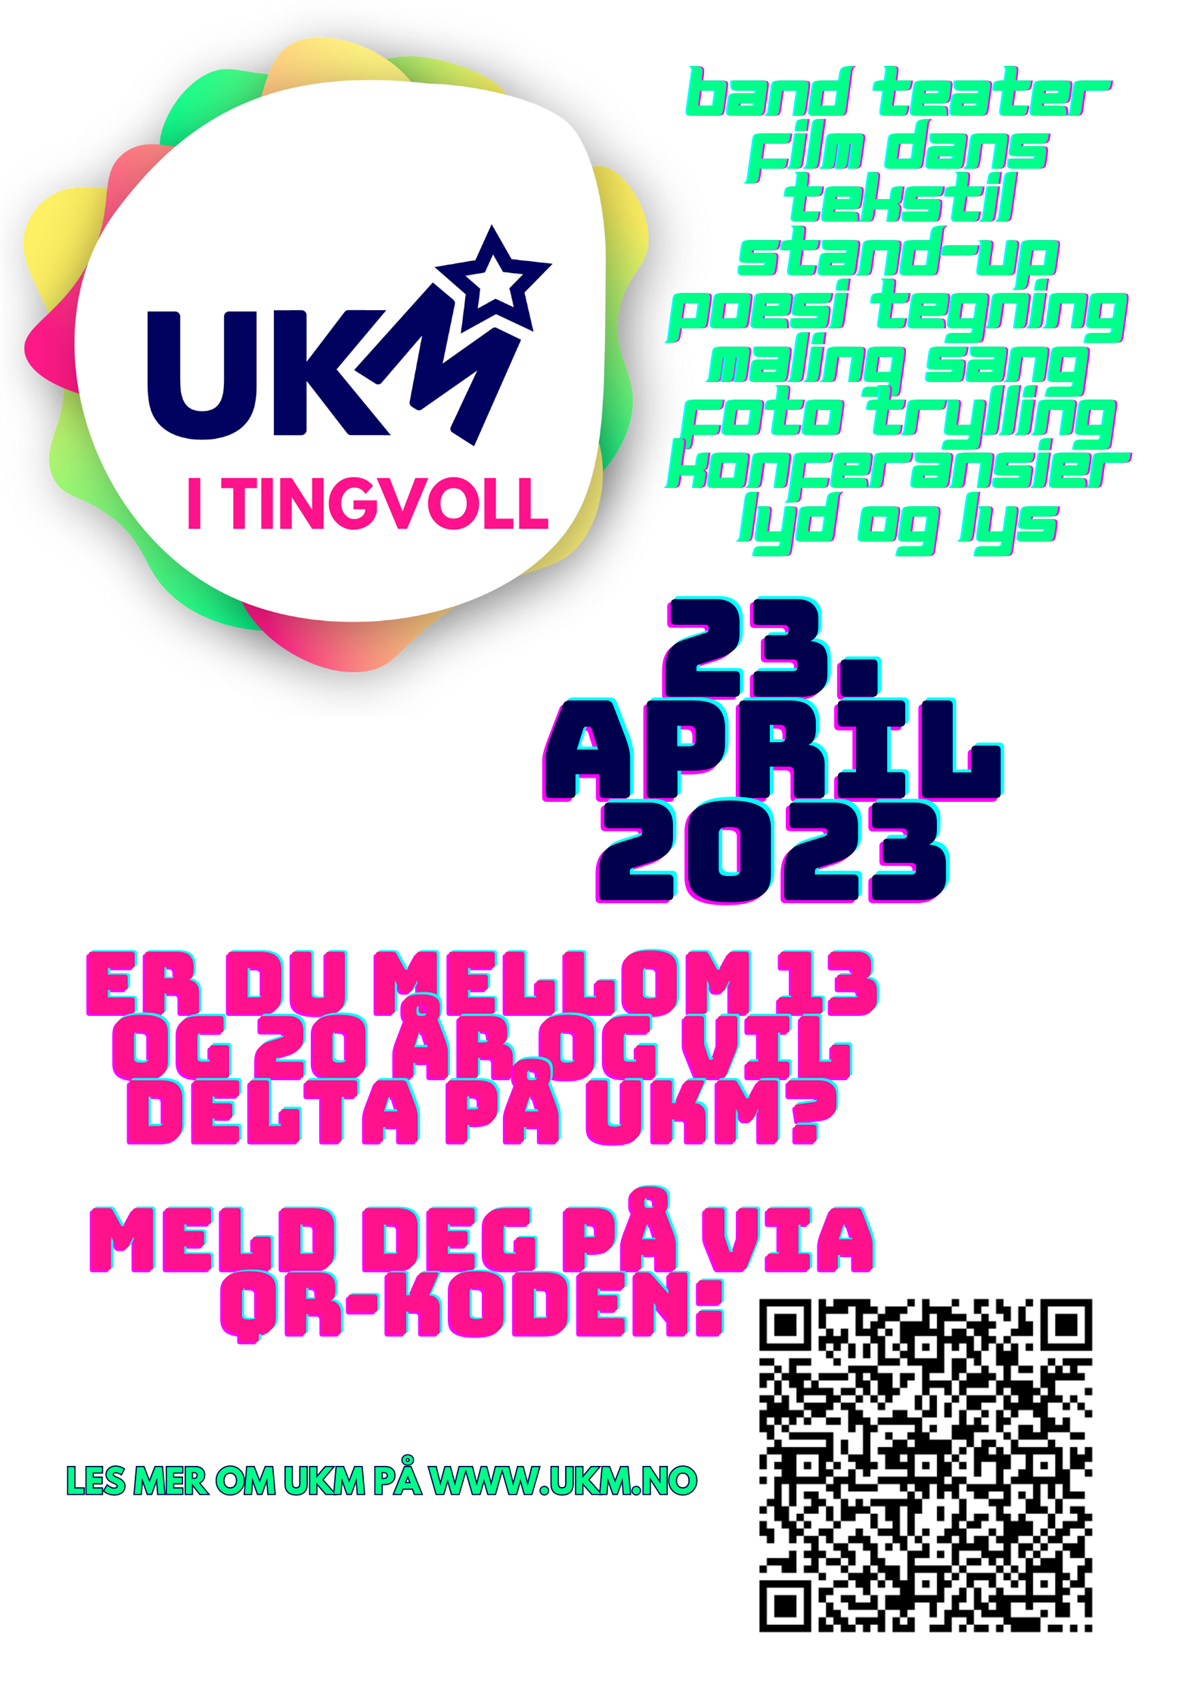 Plakat for UKM i Tingvoll som nevner eksempler på kunst- og kulturuttrykk man kan melde seg på med. Plakaten forteller i tillegg hvilken dato UKM arrangeres, 23. april 2023 og at hvis du er mellom 14 og 20 år så kan du melde deg på via QR-koden på plakaten. - Klikk for stort bilde